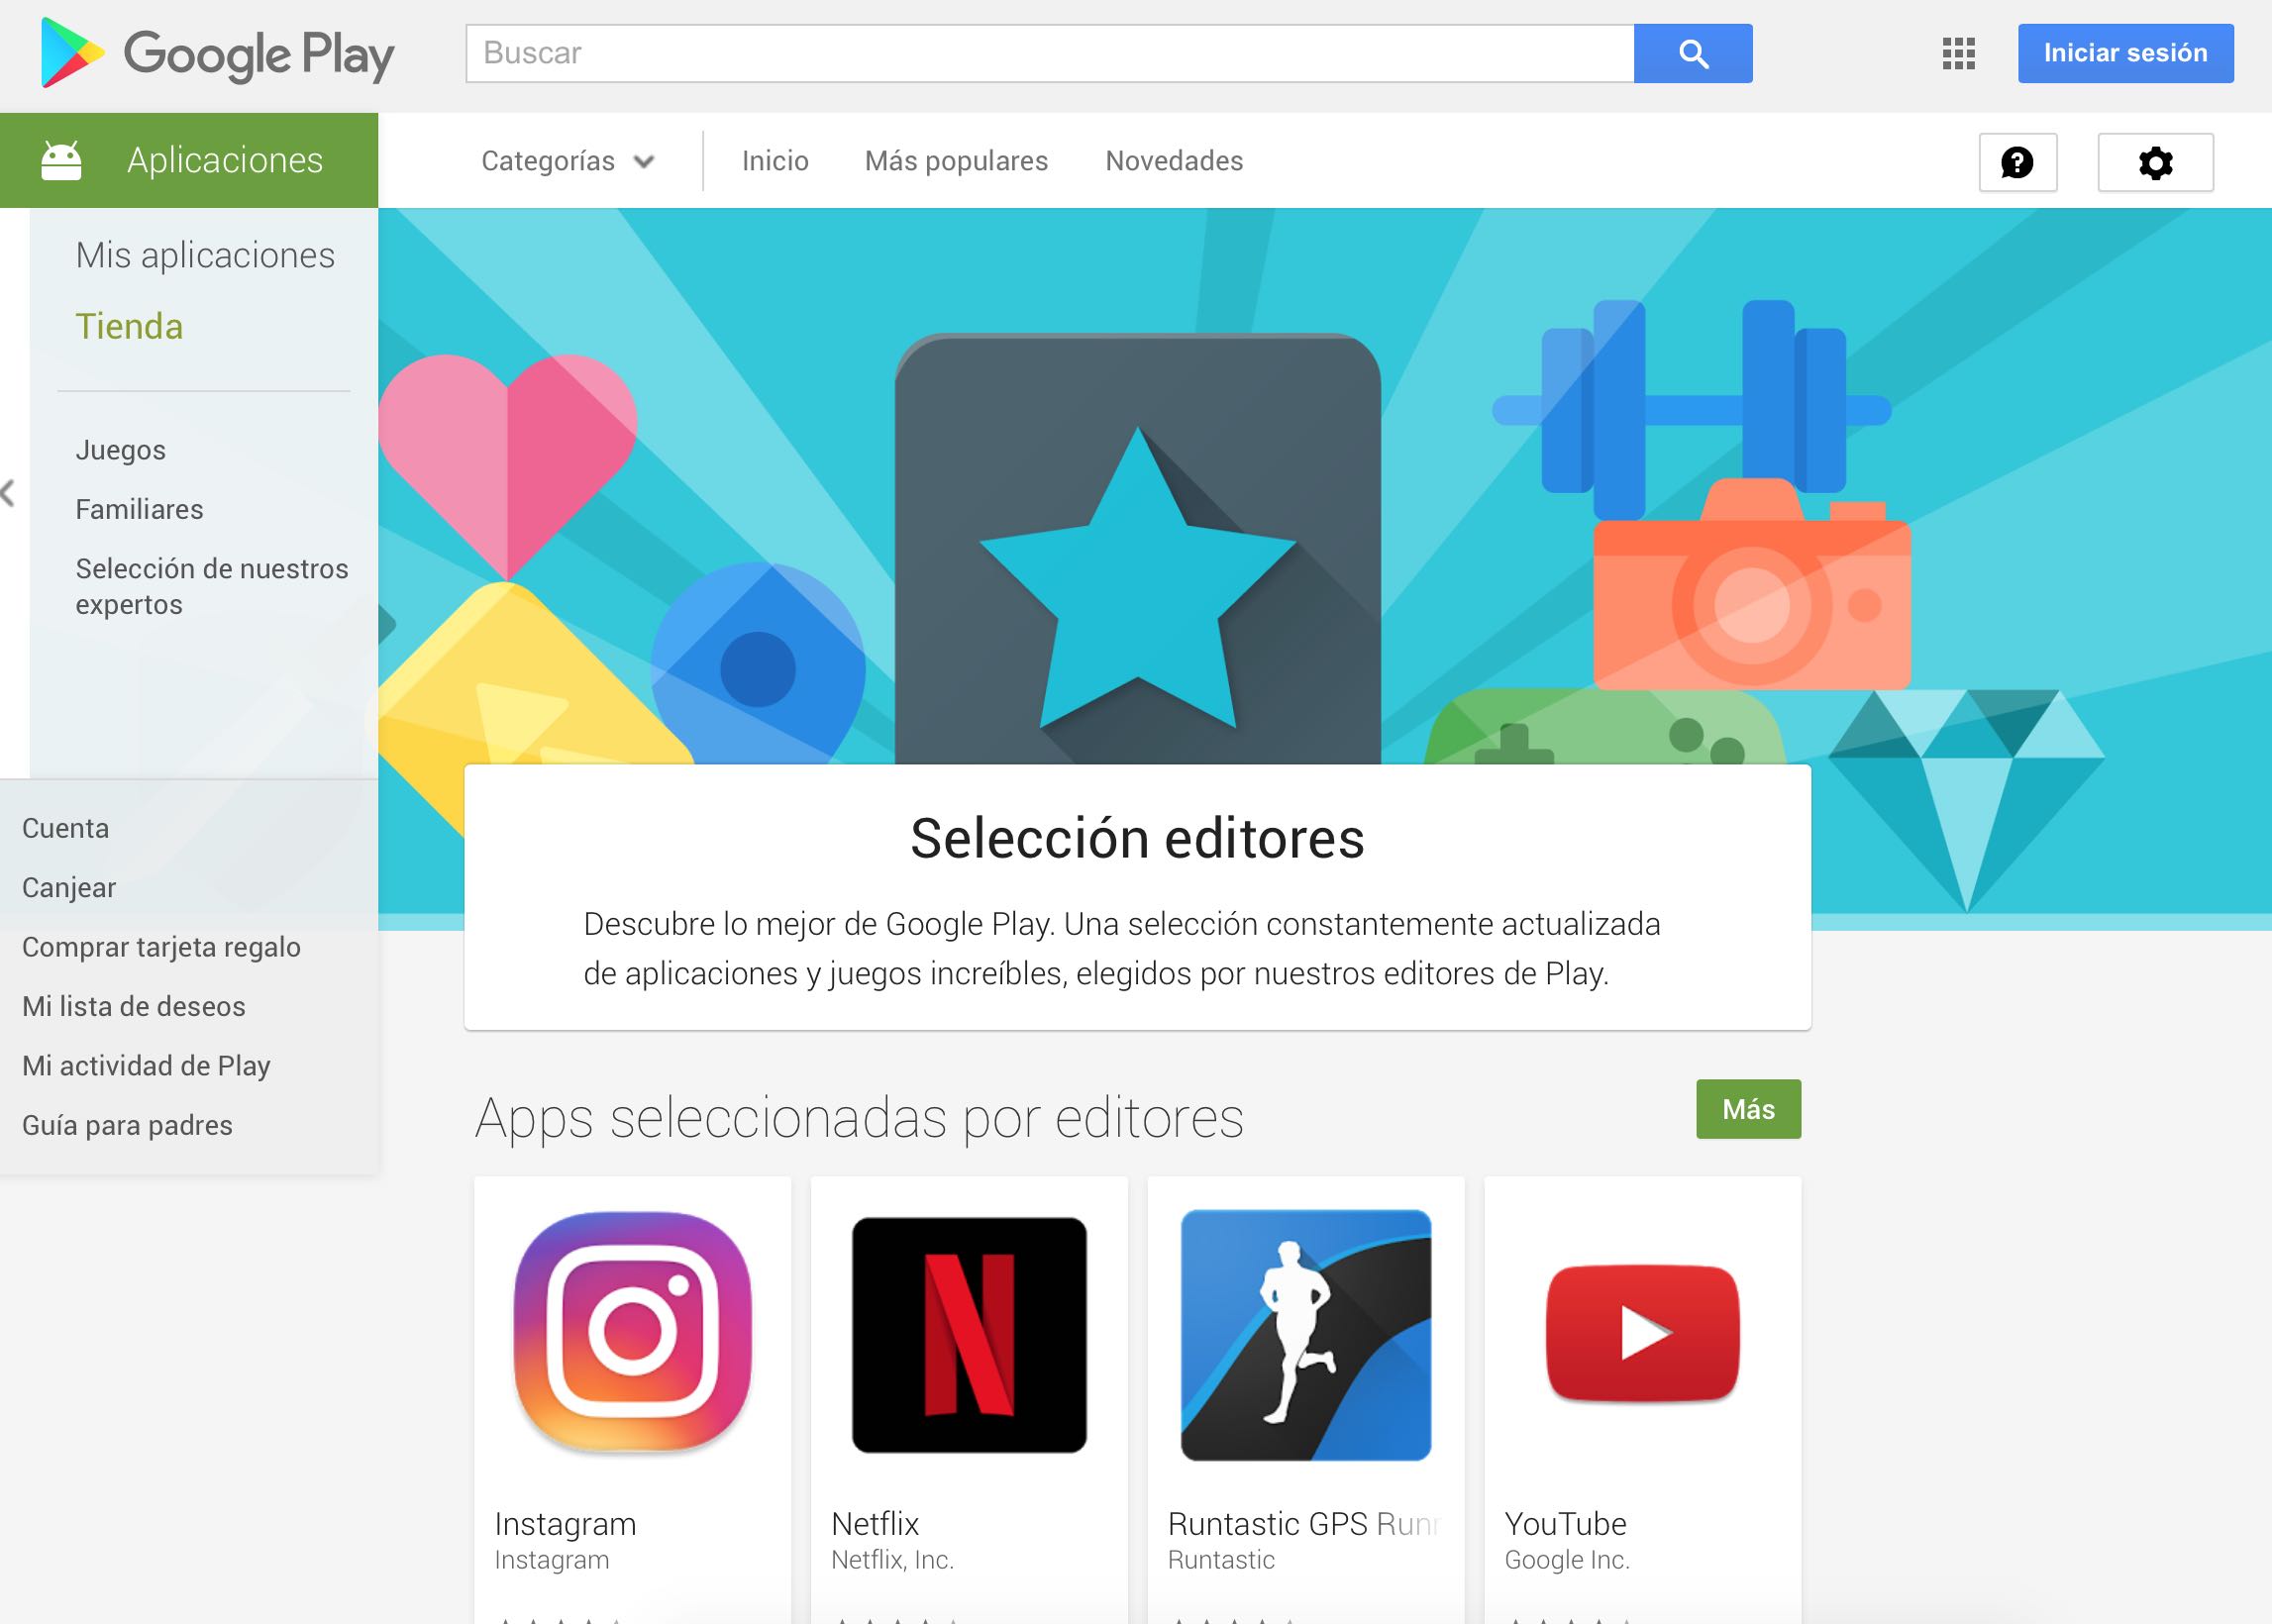 La tienda Google Play Store añade ahora una sección con las mejores apps seleccionadas por los editores